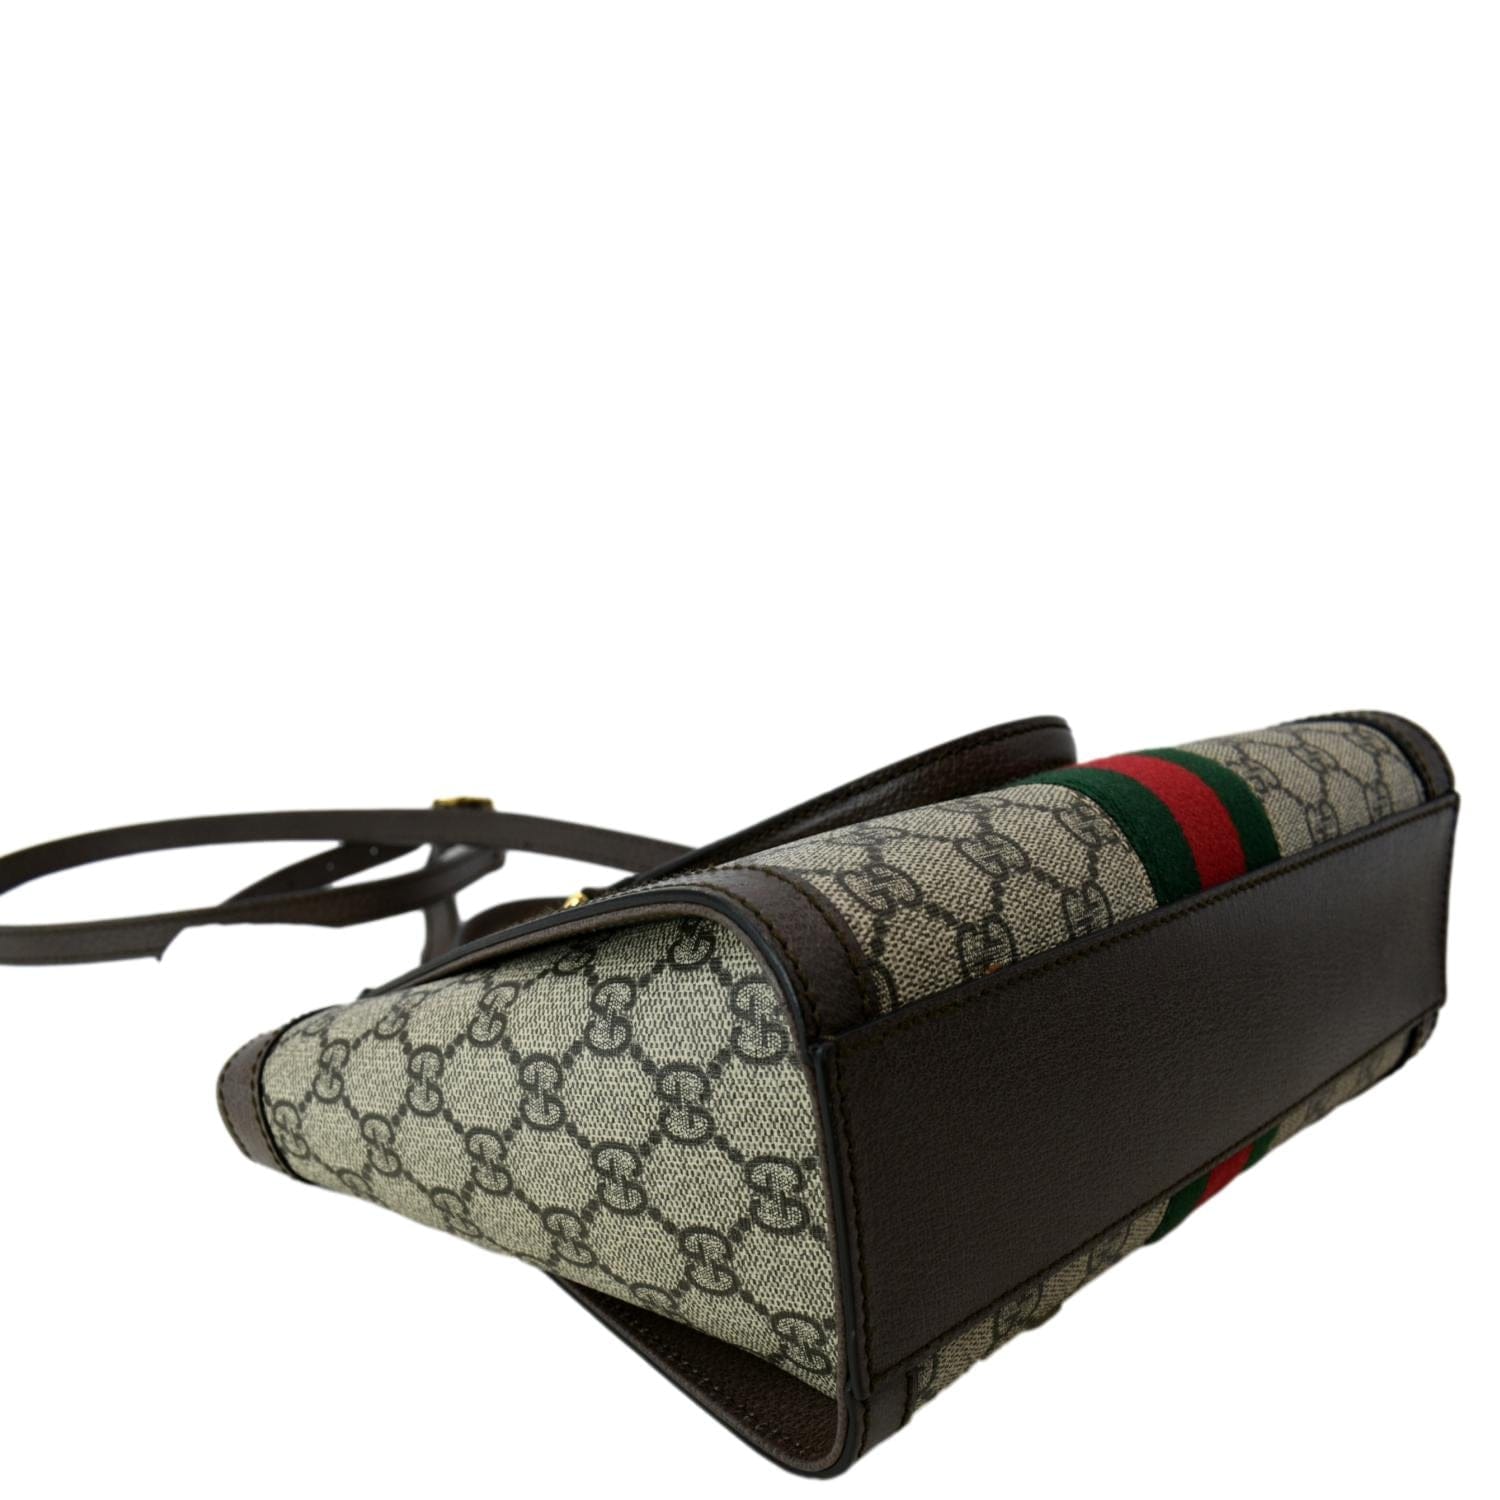 Gucci Small GG Supreme Canvas Tote Bag